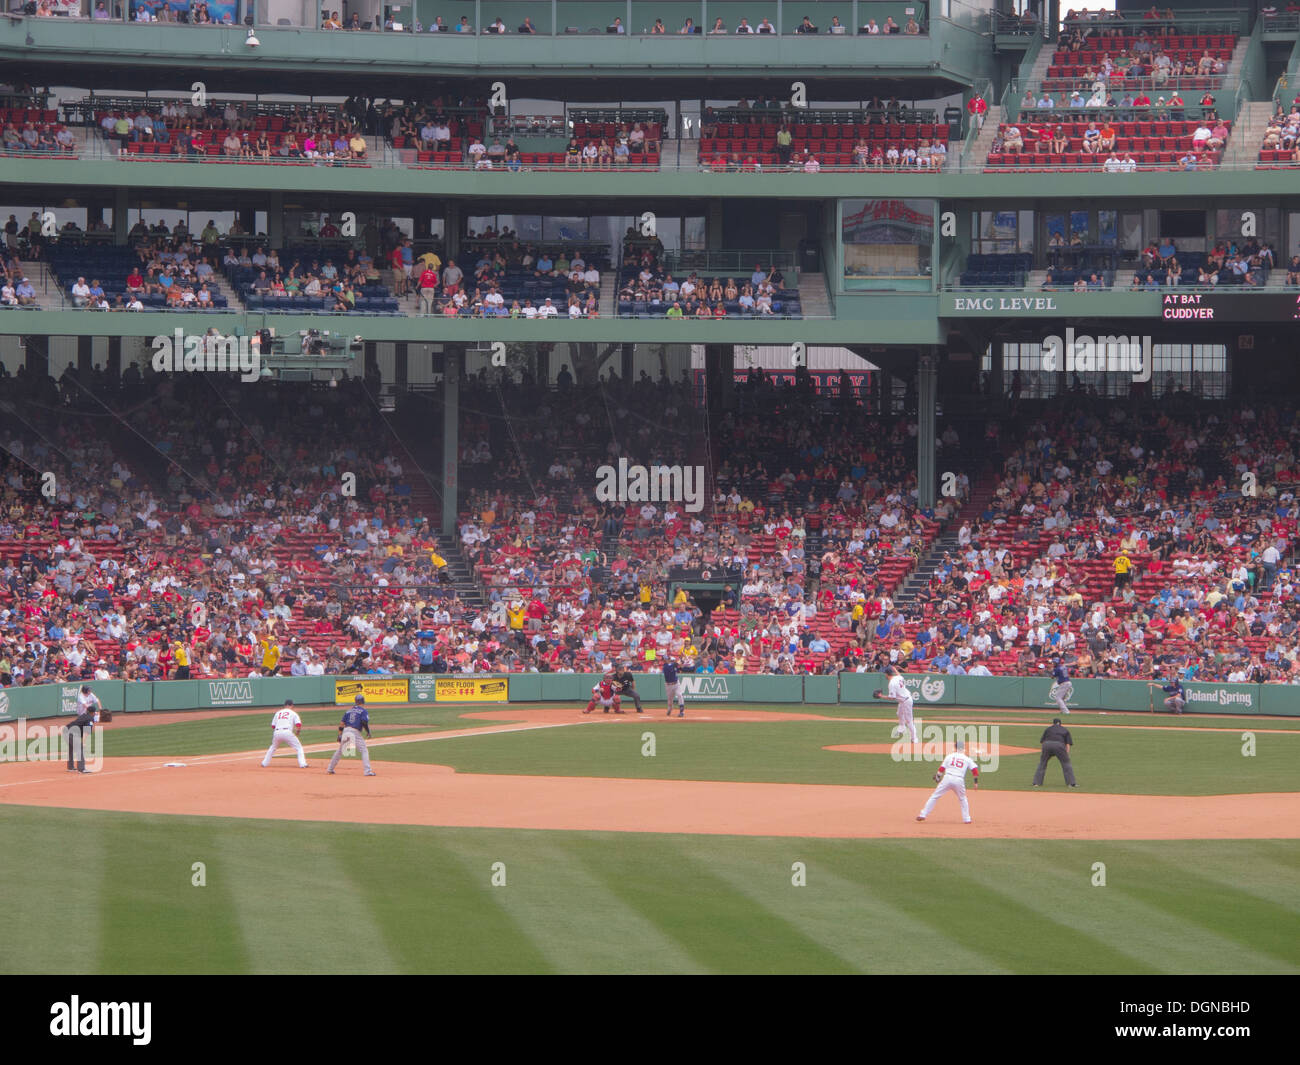 Fête du jeu à Fenway Park, domicile de l'équipe de baseball des Red Sox de Boston depuis 2012. Les Red Sox de Boston a remporté la Série mondiale 2013.Jeu Banque D'Images